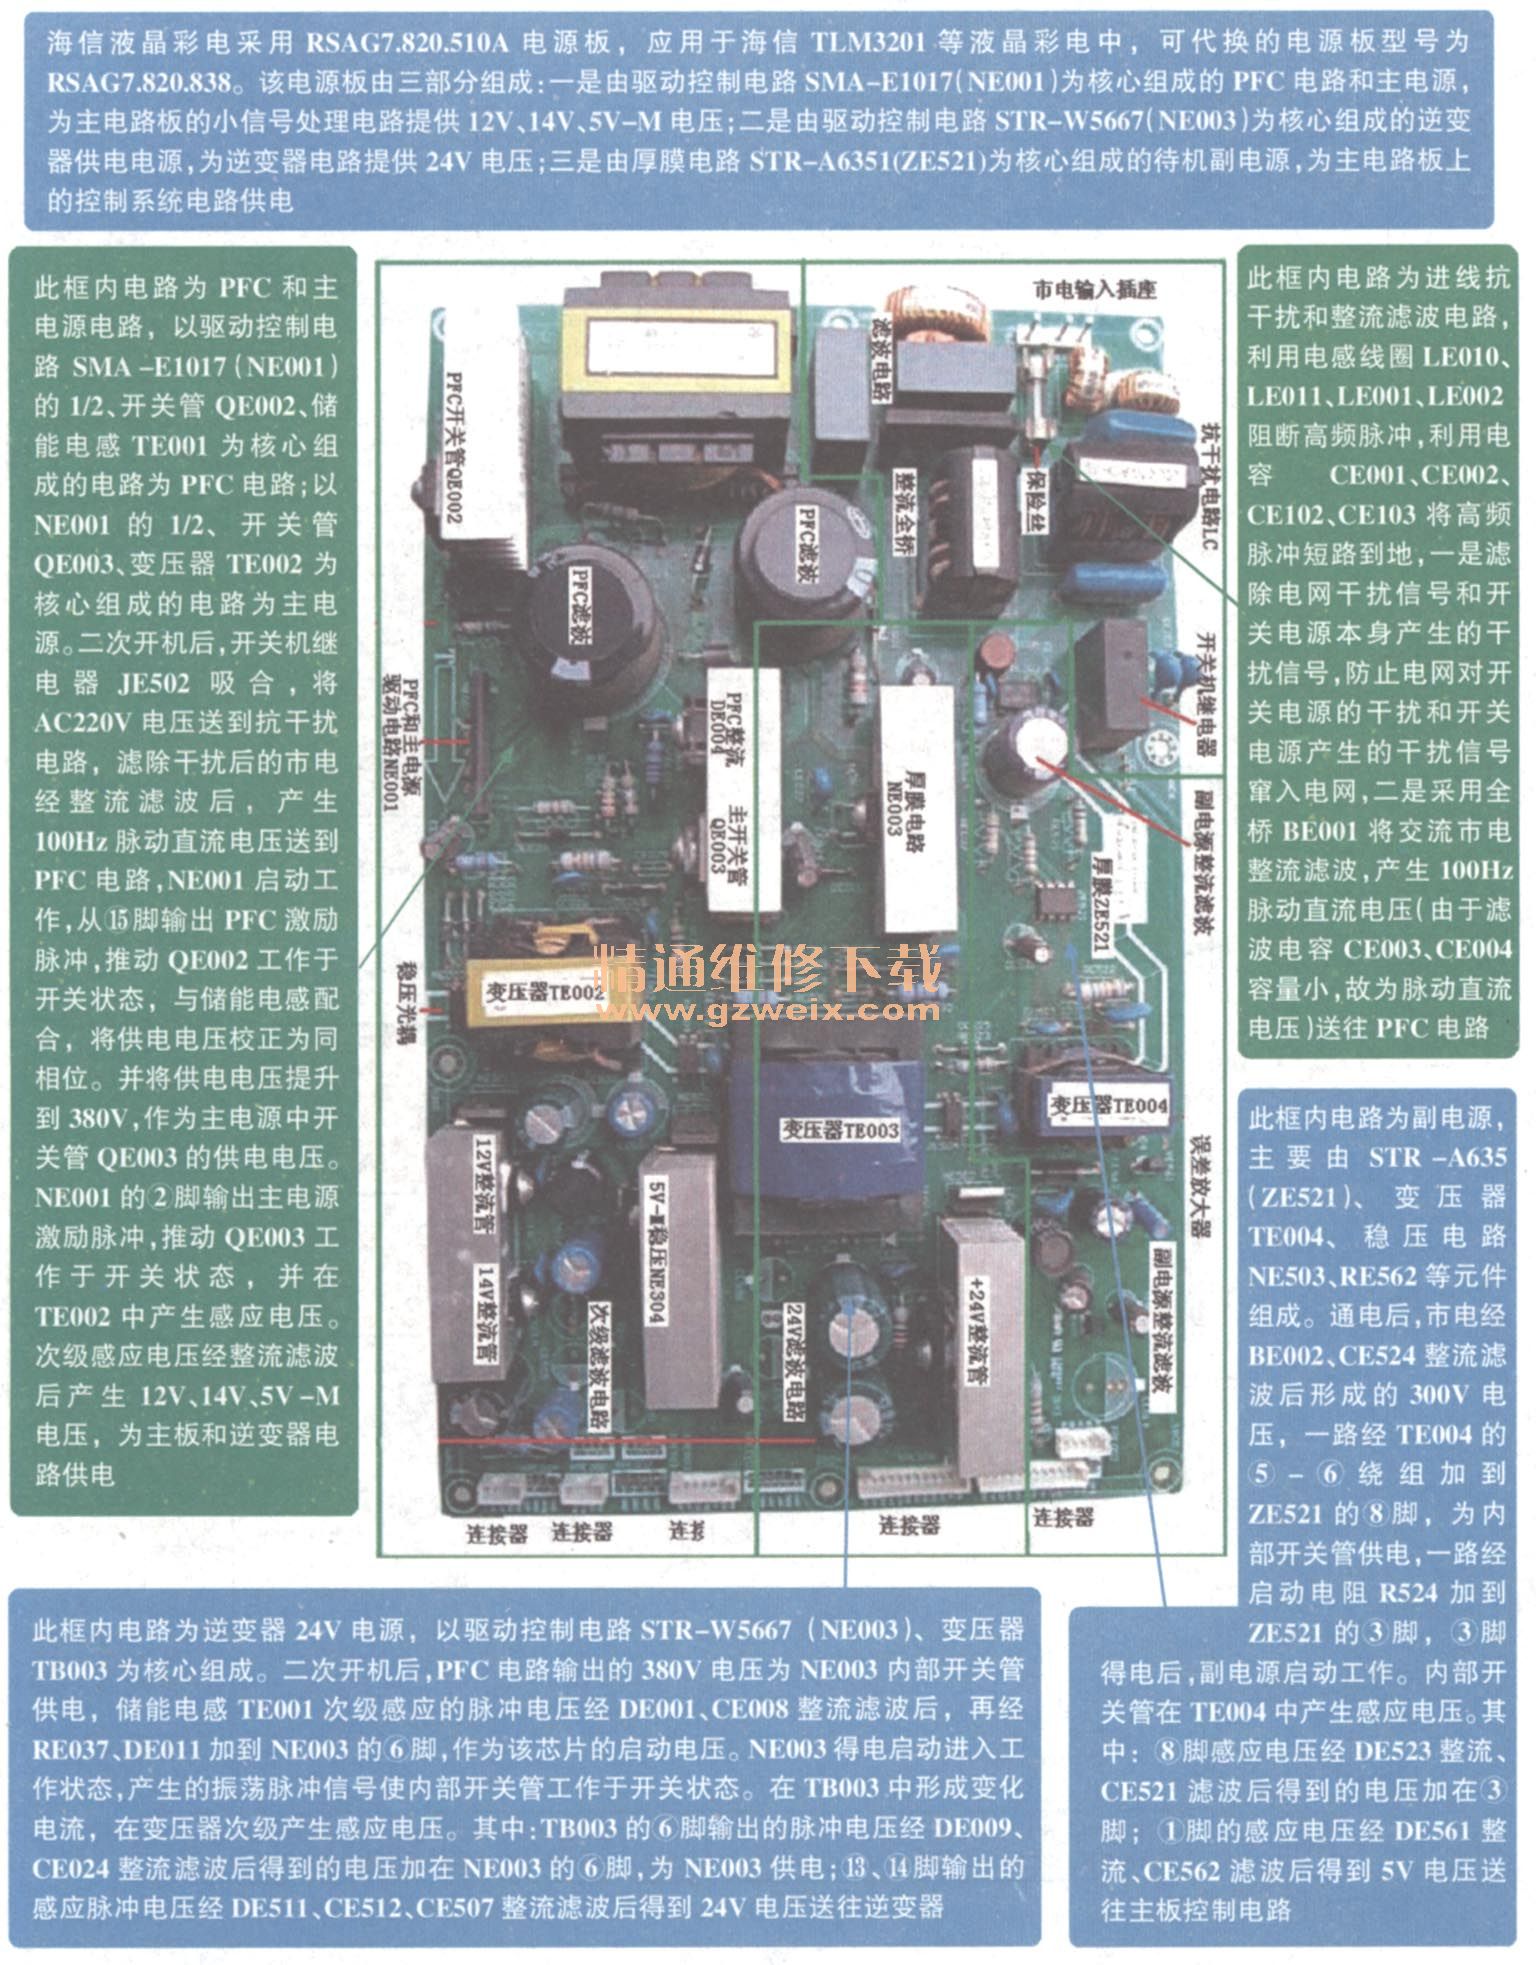 图解海信液晶电视RSAG7.820.510A电源板维修